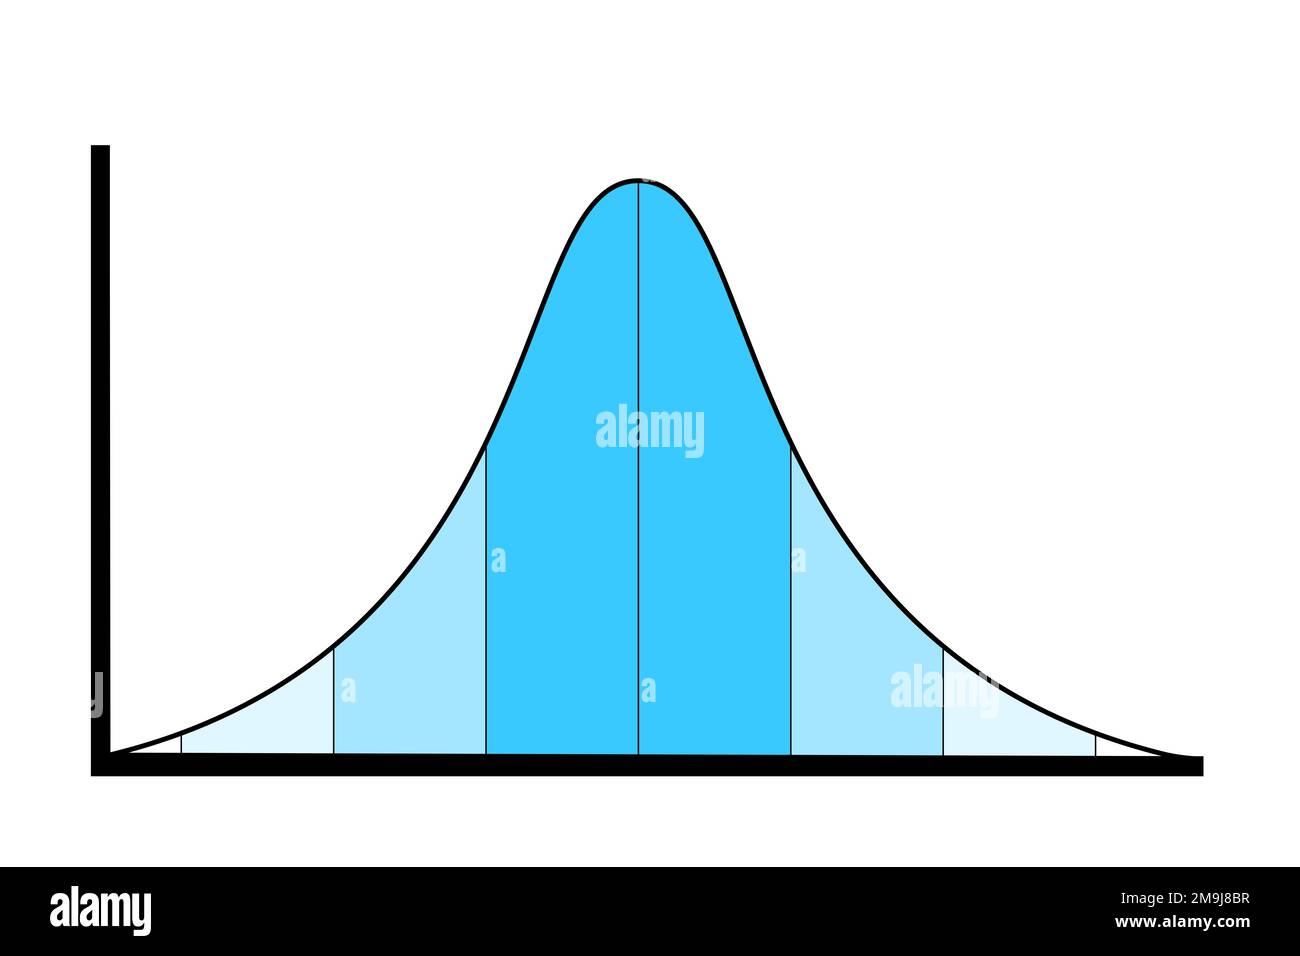 Curva de campana y distribución normal - gráfico y distribución de la relación entre media mediocre y mediana y extrema y anomalía. Ilustración vectorial. Foto de stock